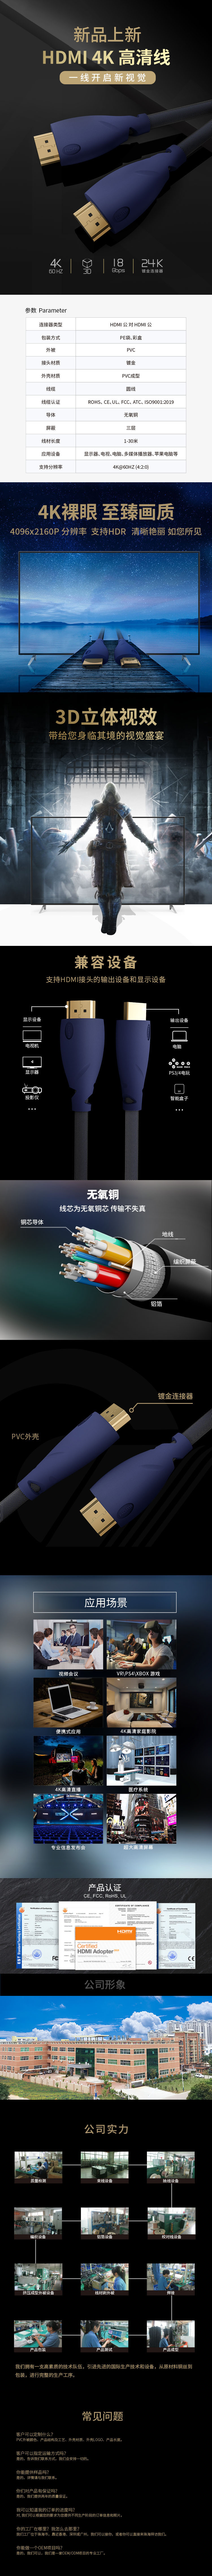 宝蓝色HDMI2..jpg